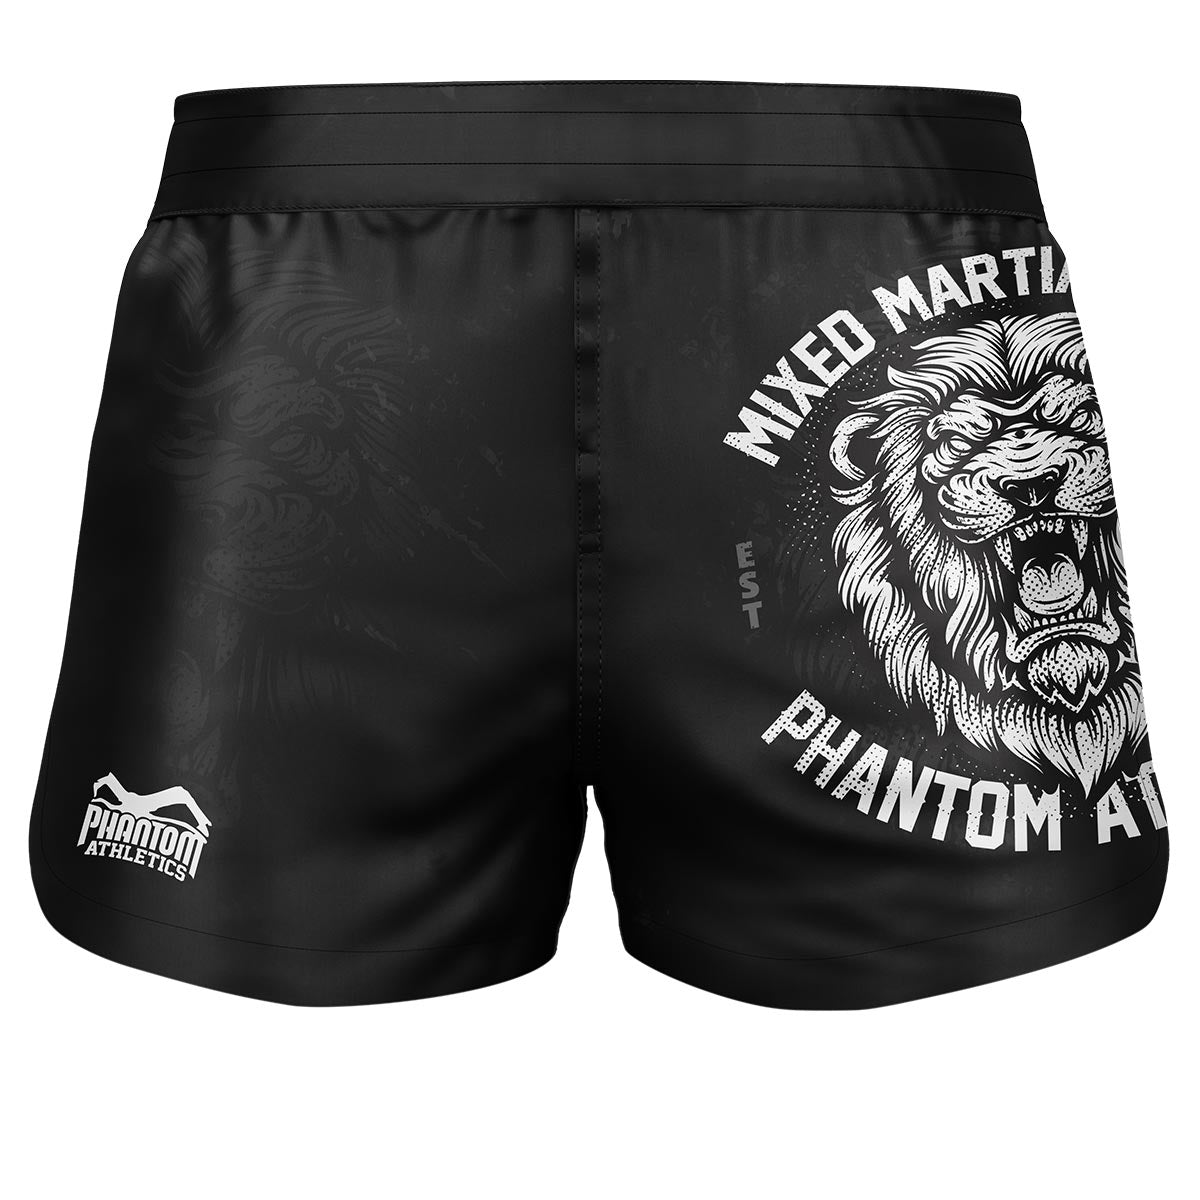 Phantom Fightshorts Fusion 2v1. Špičkové šortky pro vaše bojová umění. Ideální pro MMA, Muay Thai, BJJ, wrestling a další. V černé barvě s designem lva.